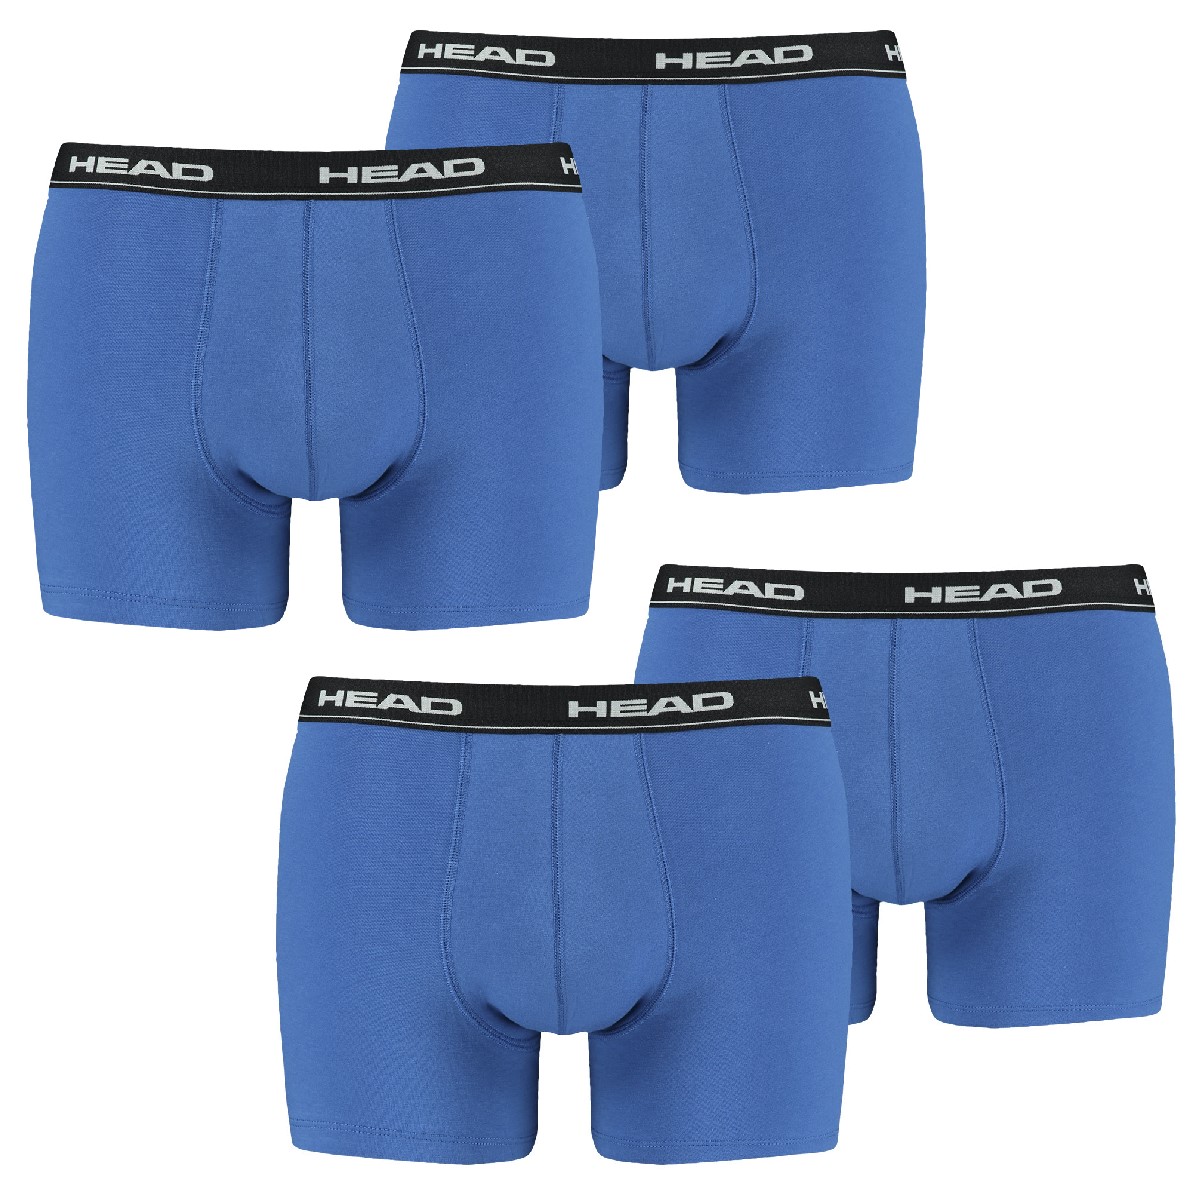 MULTIPACK BOXERS 4 PACK Head Herren Boxer Boxershorts Basic Pant Unterwäsche XL, 021 - blue / black